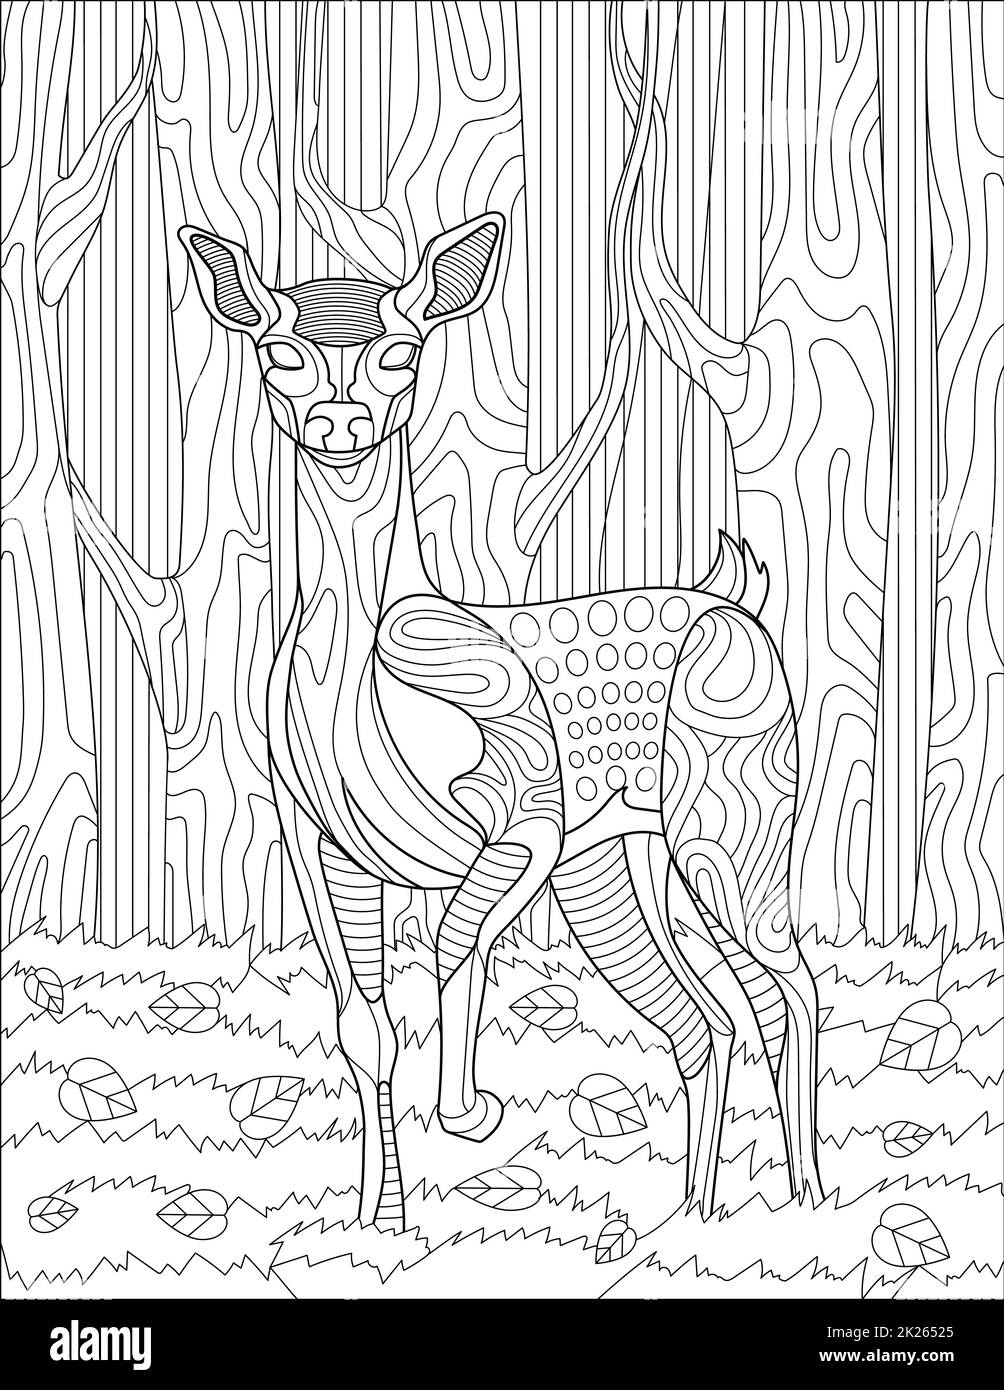 Cerf debout en ligne de forêt dessin avec des arbres en arrière-plan pour le livre de coloriage Banque D'Images